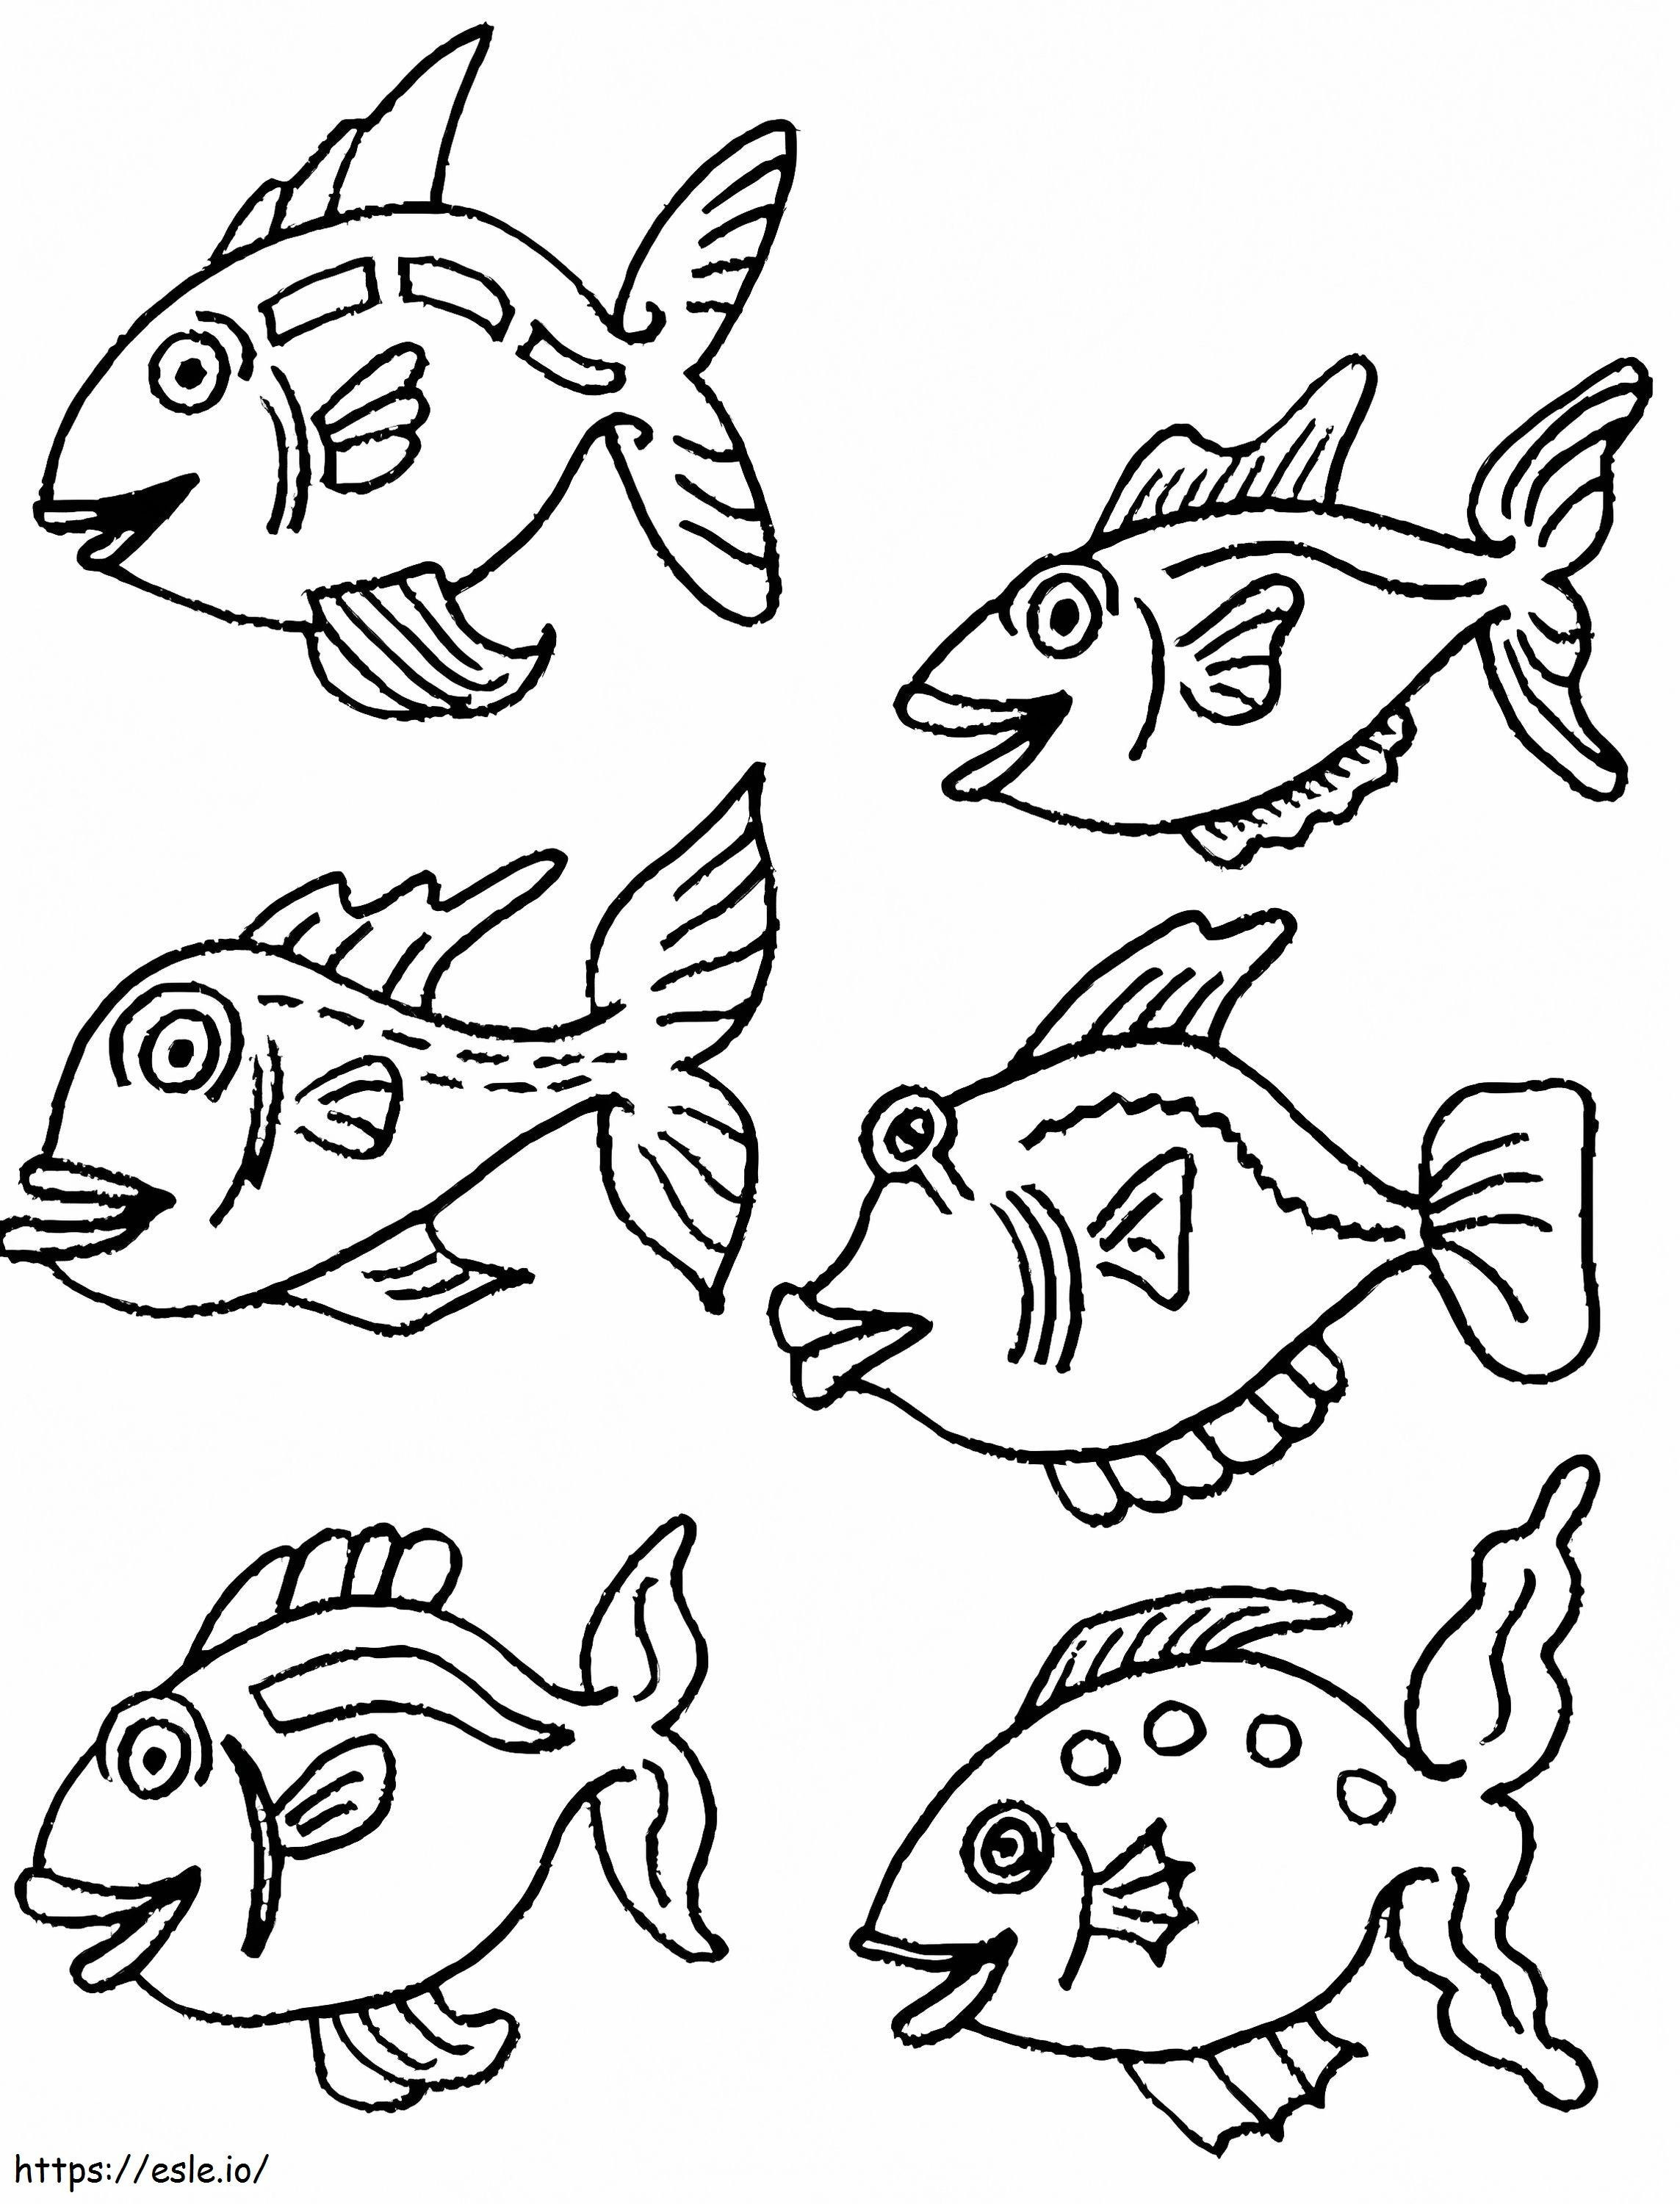 Sechs Fische ausmalbilder